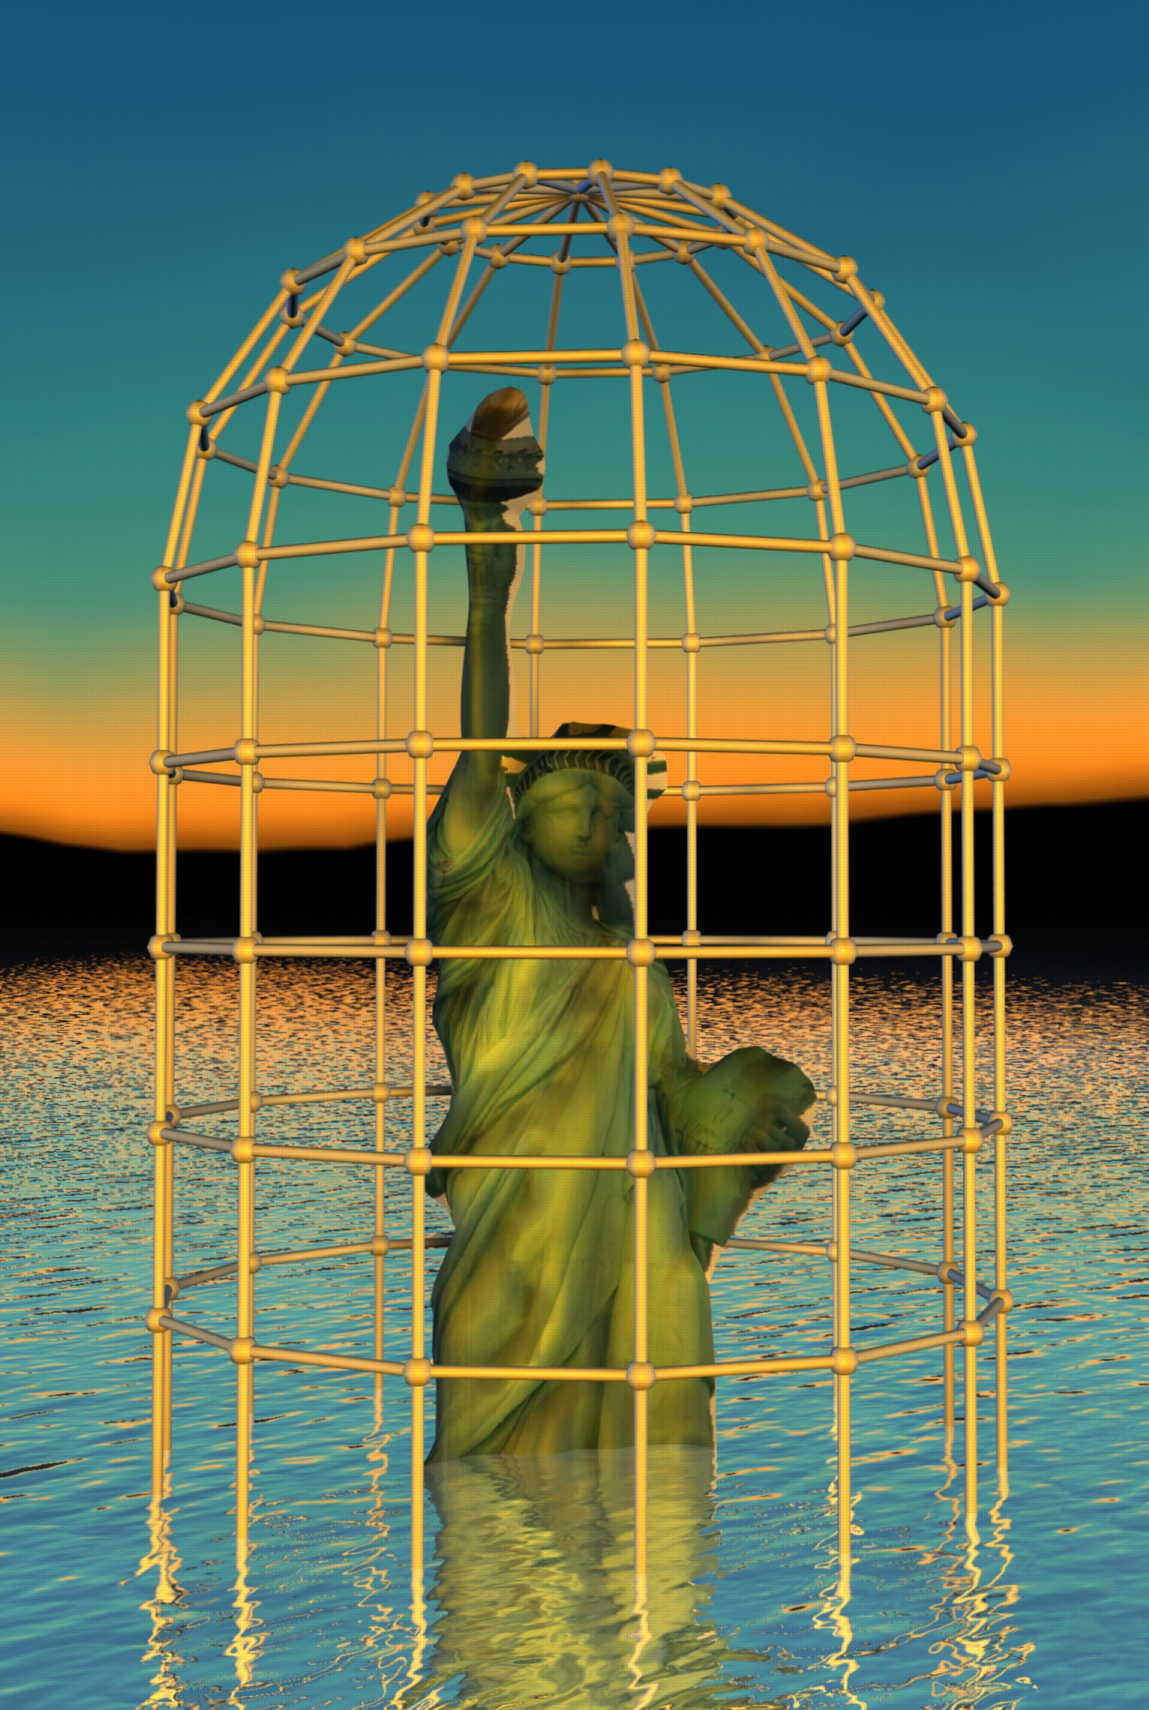 Statue_of_Prison_Liberty_21th_Century